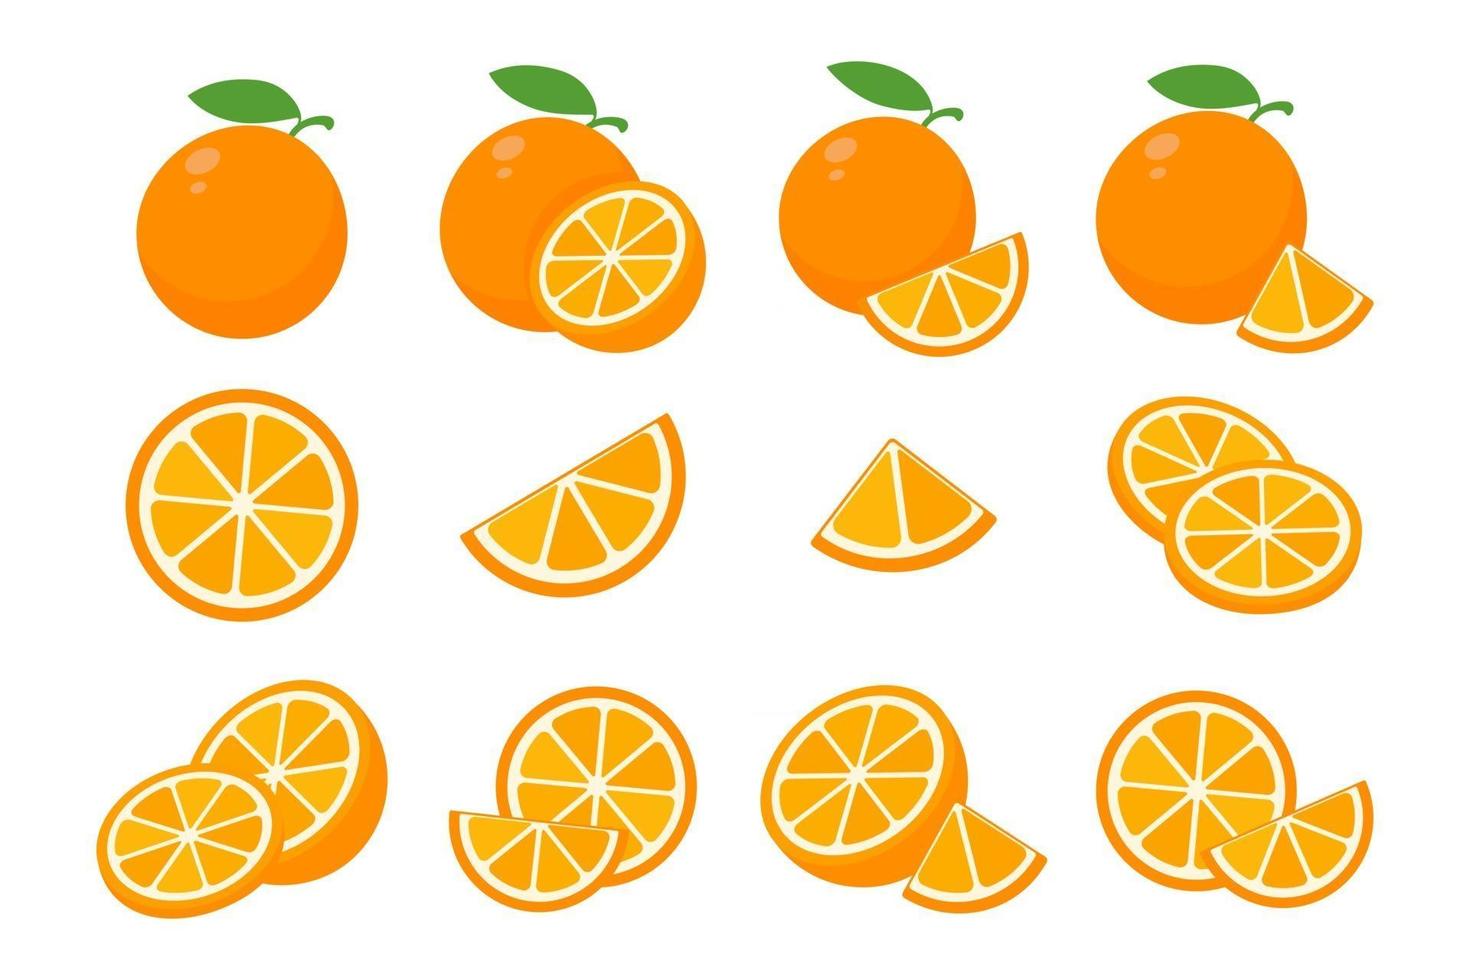 laranjas doces são cortadas ao meio para beber suco de laranja durante o verão. vetor